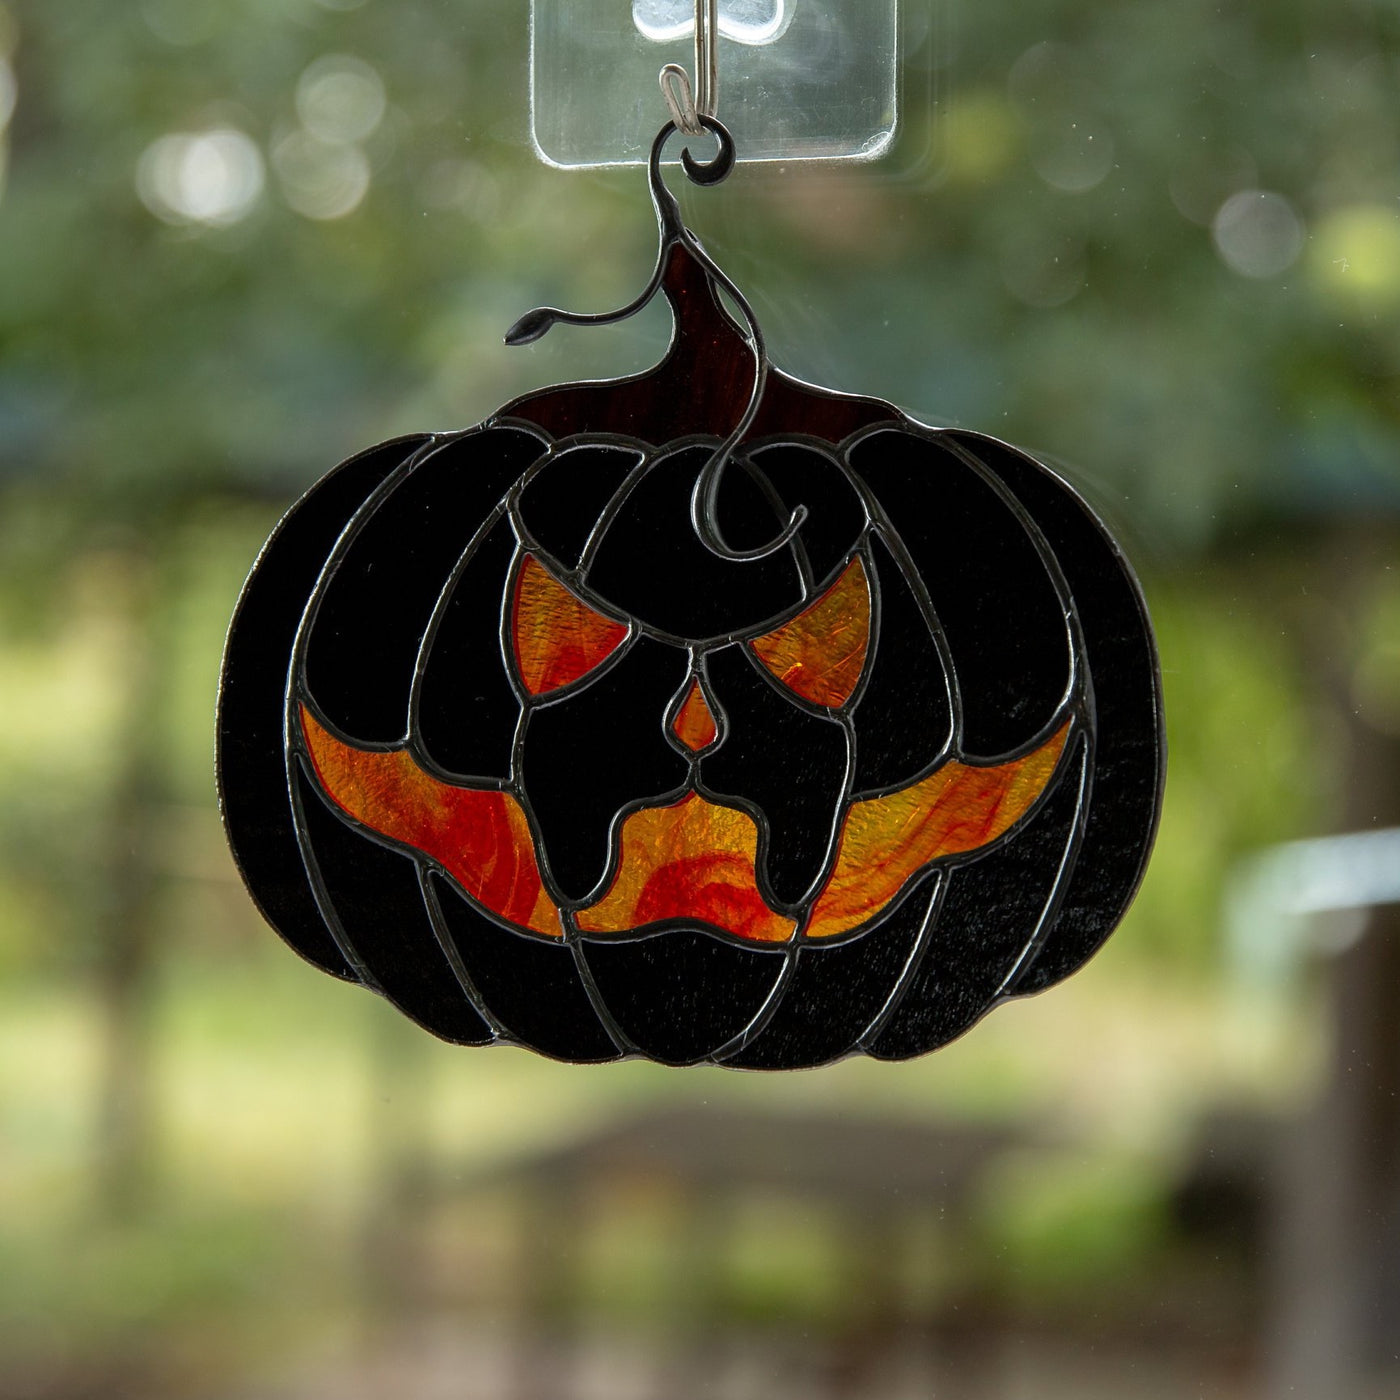 Halloween stained glass decor Glass pumpkin horror decor Halloween gifts Fall stained glass suncatcher